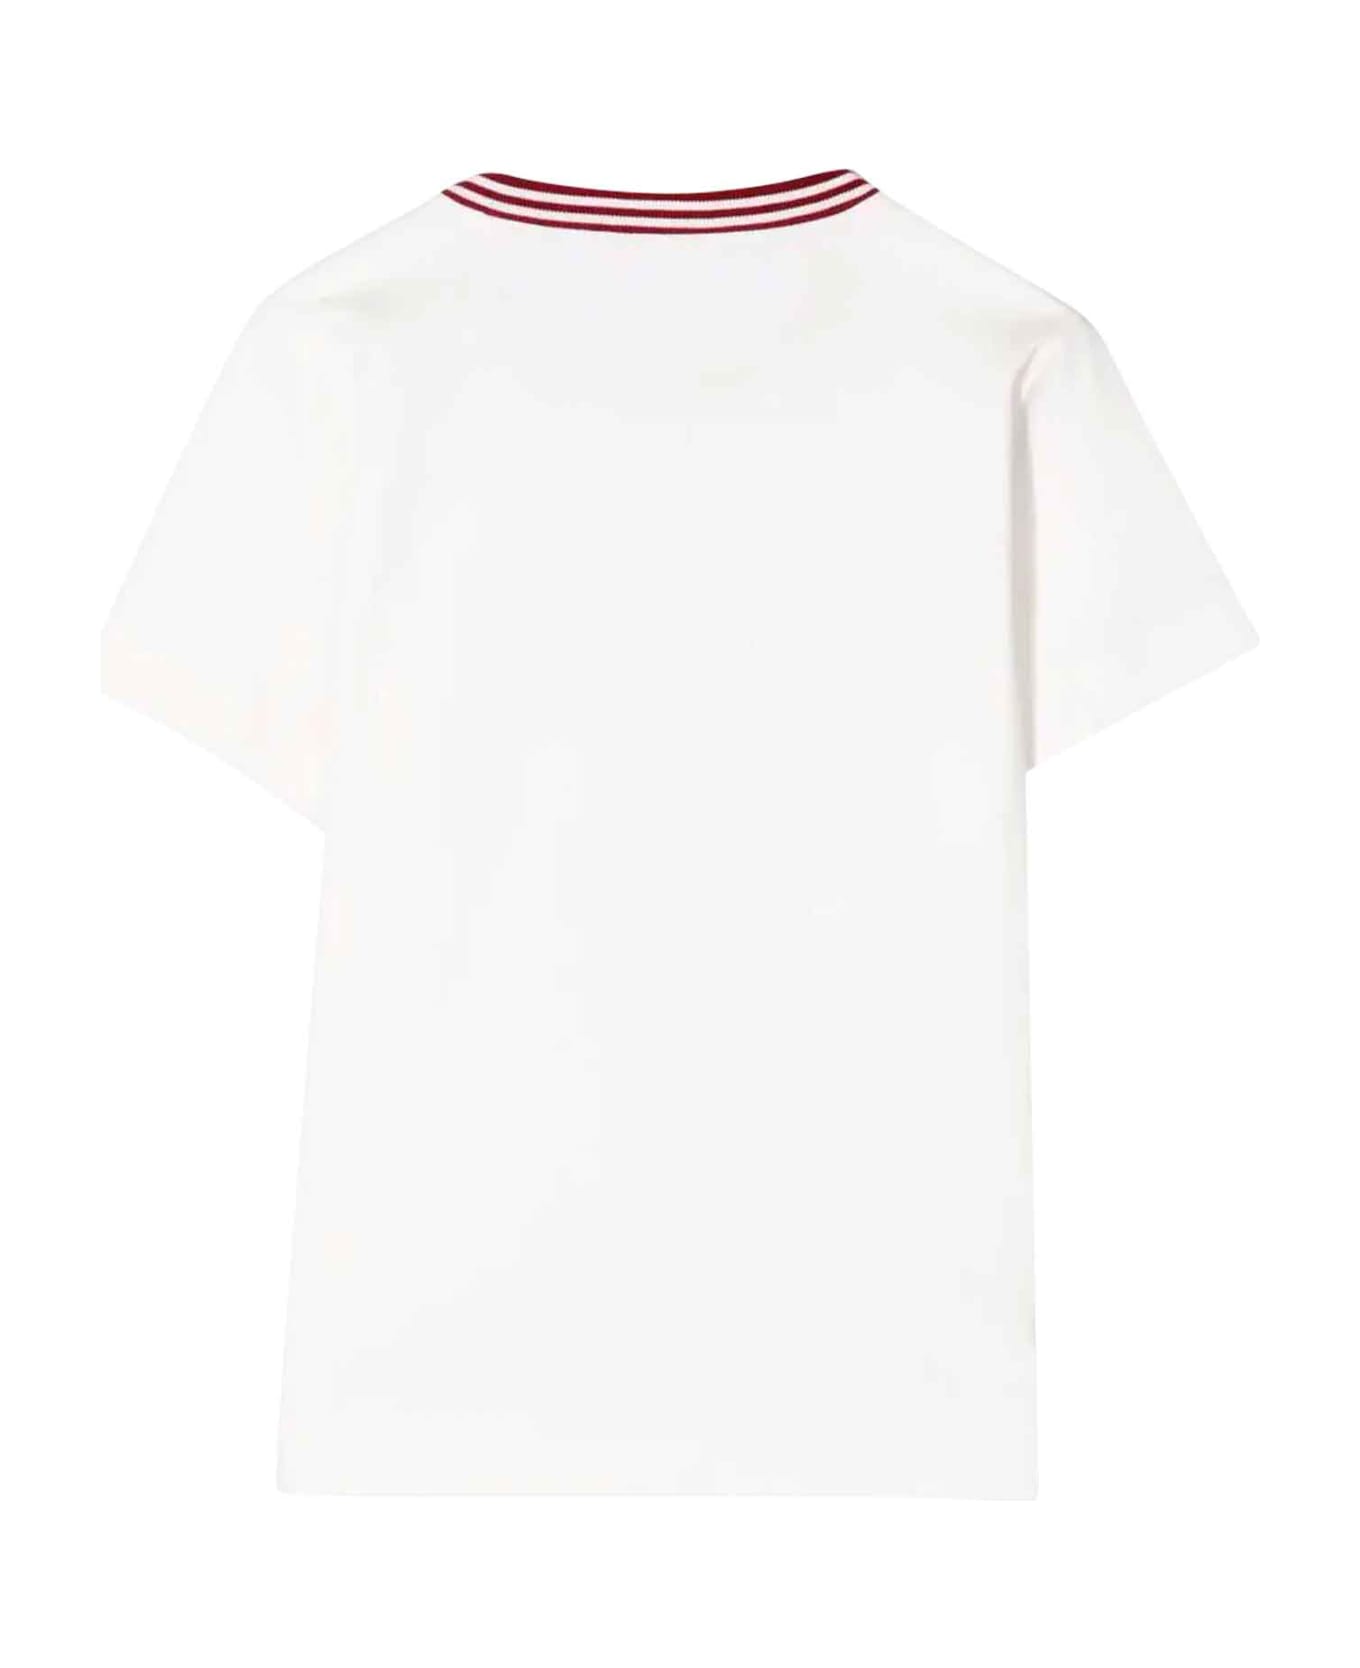 Brunello Cucinelli White T-shirt Teen Boy - Bianco